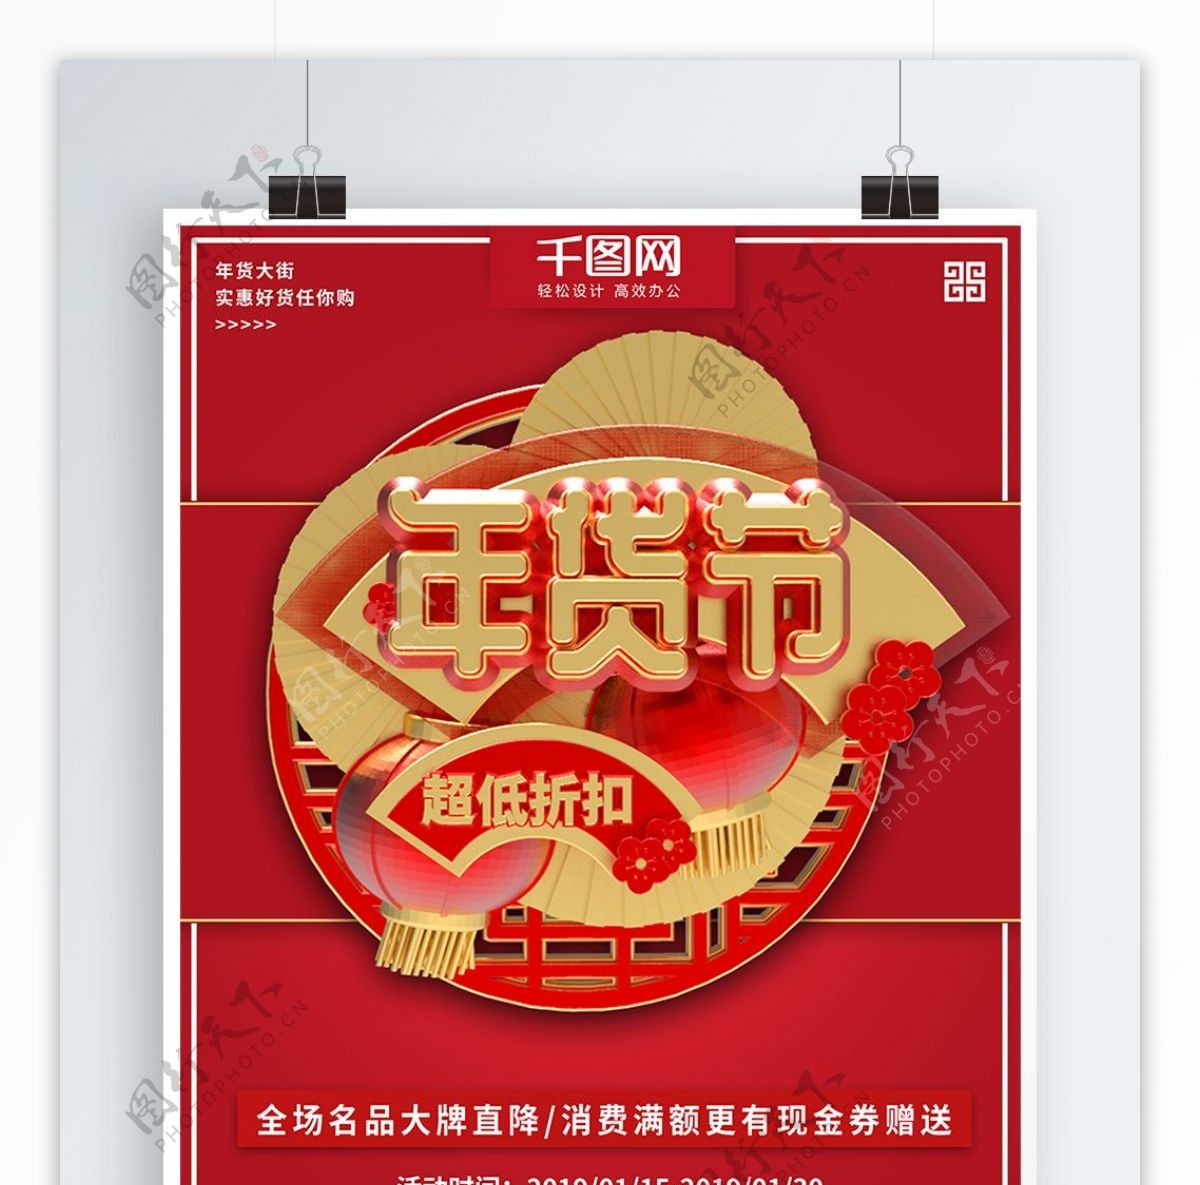 红色大气立体年货节促销商业宣传海报